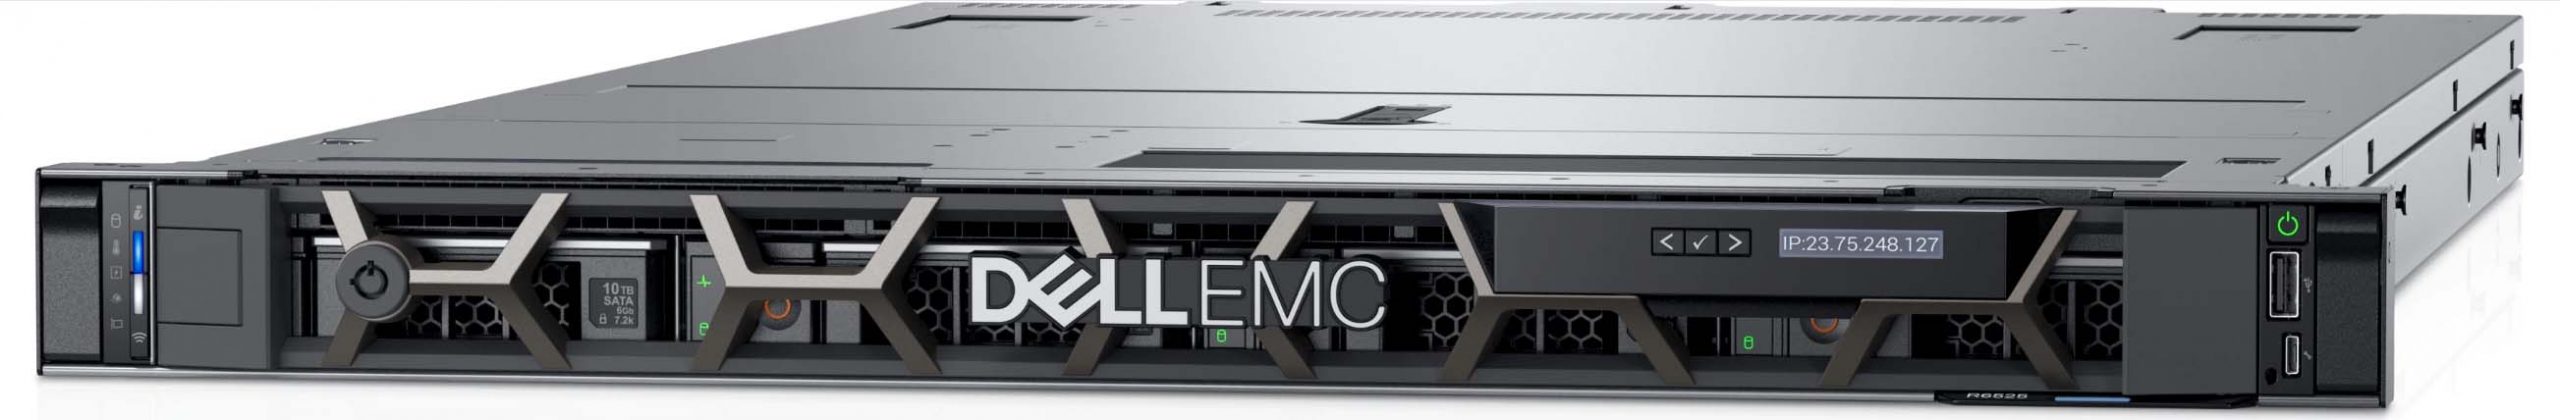 Dell EMC Poweredge C6525 – Máy chủ mang đến hiệu suất đột phá cho doanh nghiệp